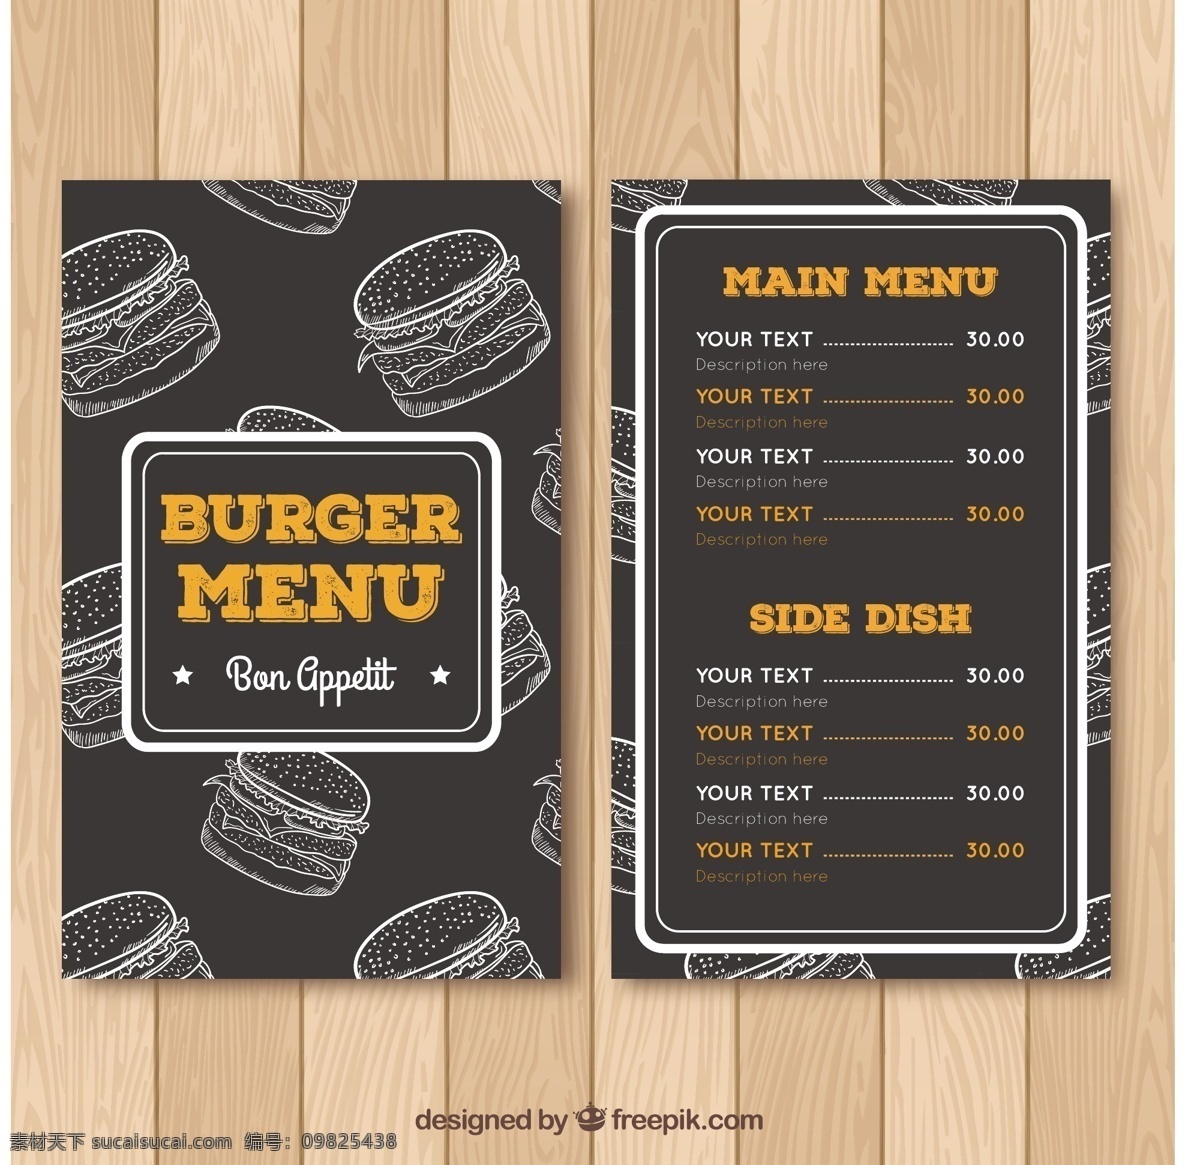 汉堡 菜单 黑板 食物 模板 餐厅 厨师 餐厅菜单 烹饪 快餐 肉类 食物菜单 奶酪 晚餐 吃 打印 饮食